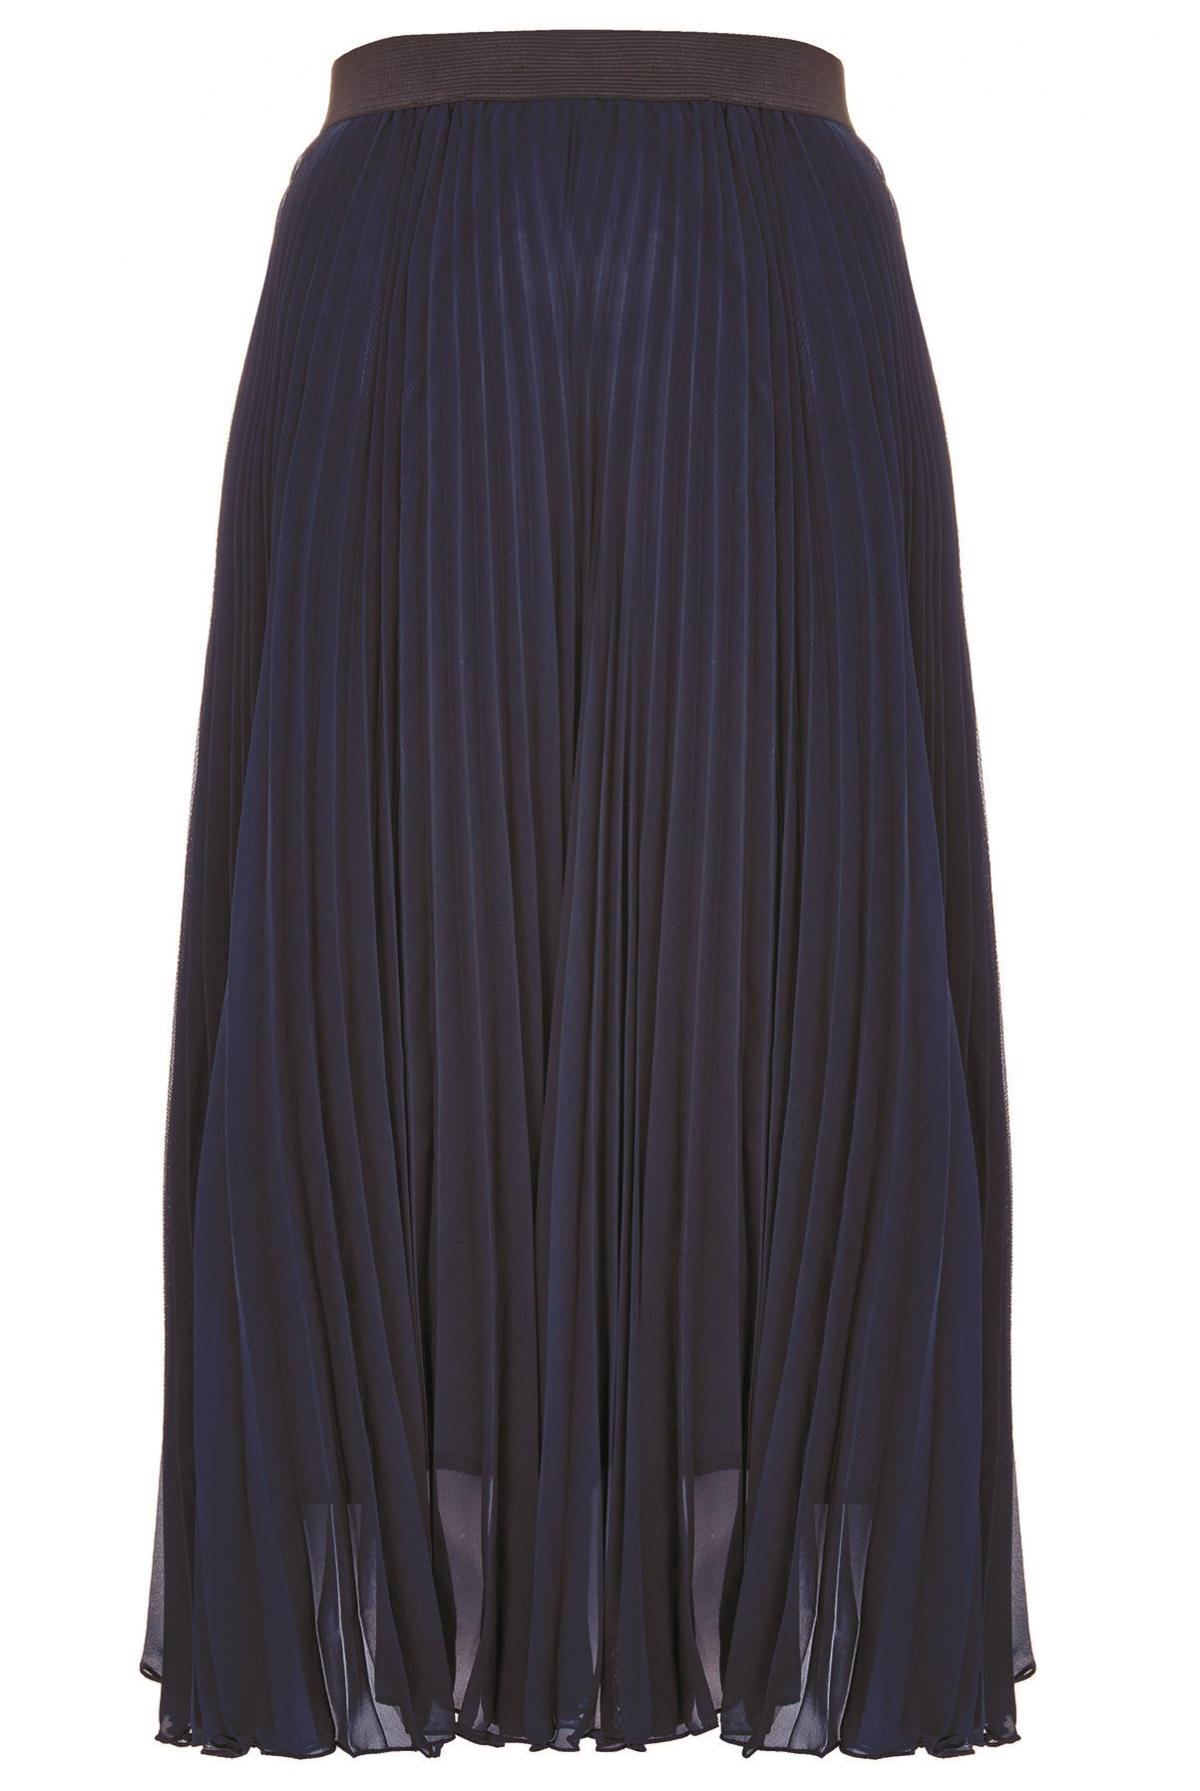 JOY, Louche Delilah skirt, £39